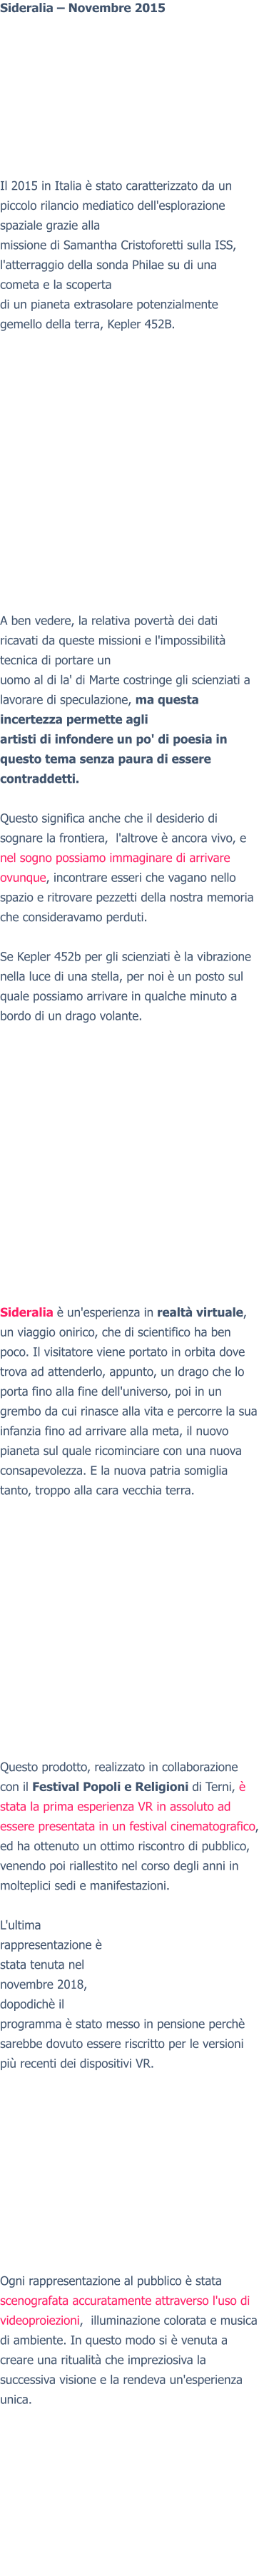 Sideralia – Novembre 2015Il 2015 in Italia è stato caratterizzato da un piccolo rilancio mediatico dell'esplorazione spaziale grazie alla missione di Samantha Cristoforetti sulla ISS, l'atterraggio della sonda Philae su di una cometa e la scoperta di un pianeta extrasolare potenzialmente gemello della terra, Kepler 452B.  A ben vedere, la relativa povertà dei dati ricavati da queste missioni e l'impossibilità tecnica di portare un uomo al di la' di Marte costringe gli scienziati a lavorare di speculazione, ma questa incertezza permette agli artisti di infondere un po' di poesia in questo tema senza paura di essere contraddetti.  Questo significa anche che il desiderio di sognare la frontiera,  l'altrove è ancora vivo, e nel sogno possiamo immaginare di arrivare ovunque, incontrare esseri che vagano nello spazio e ritrovare pezzetti della nostra memoria che consideravamo perduti.  Se Kepler 452b per gli scienziati è la vibrazione nella luce di una stella, per noi è un posto sul quale possiamo arrivare in qualche minuto a bordo di un drago volante.  Sideralia è un'esperienza in realtà virtuale, un viaggio onirico, che di scientifico ha ben poco. Il visitatore viene portato in orbita dove trova ad attenderlo, appunto, un drago che lo porta fino alla fine dell'universo, poi in un grembo da cui rinasce alla vita e percorre la sua infanzia fino ad arrivare alla meta, il nuovo pianeta sul quale ricominciare con una nuova consapevolezza. E la nuova patria somiglia tanto, troppo alla cara vecchia terra.  Questo prodotto, realizzato in collaborazione con il Festival Popoli e Religioni di Terni, è stata la prima esperienza VR in assoluto ad essere presentata in un festival cinematografico, ed ha ottenuto un ottimo riscontro di pubblico, venendo poi riallestito nel corso degli anni in molteplici sedi e manifestazioni.  L'ultima rappresentazione è stata tenuta nel novembre 2018, dopodichè il programma è stato messo in pensione perchè sarebbe dovuto essere riscritto per le versioni più recenti dei dispositivi VR. Ogni rappresentazione al pubblico è stata scenografata accuratamente attraverso l'uso di videoproiezioni,  illuminazione colorata e musica di ambiente. In questo modo si è venuta a creare una ritualità che impreziosiva la successiva visione e la rendeva un'esperienza unica.